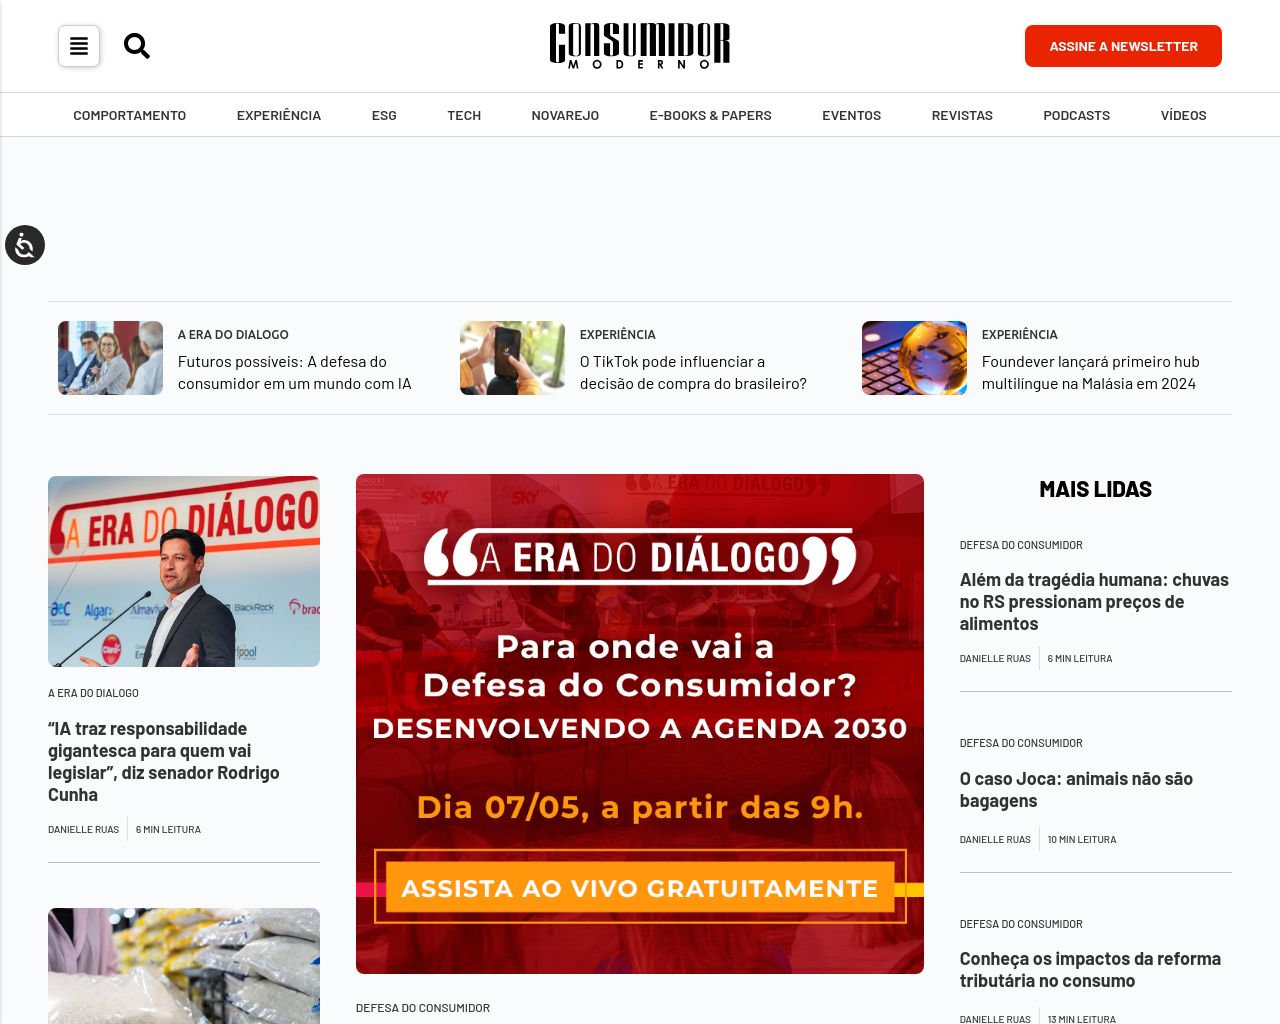 consumidormoderno.com.br